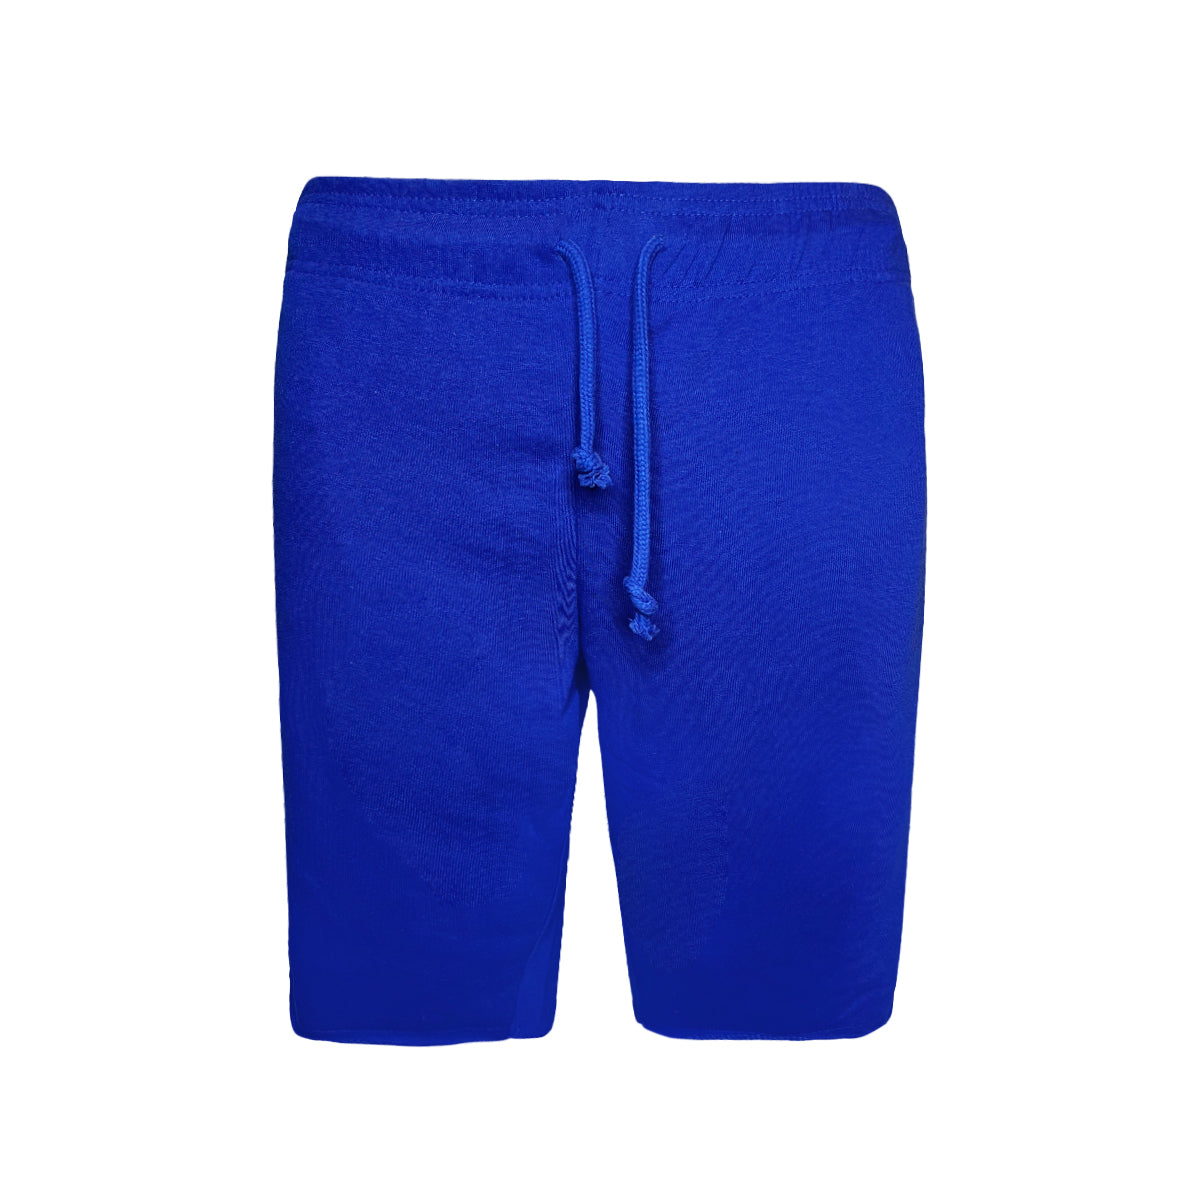 6030 - Adult Smart Shorts-Royal Blue Color - AF APPARELS(USA)